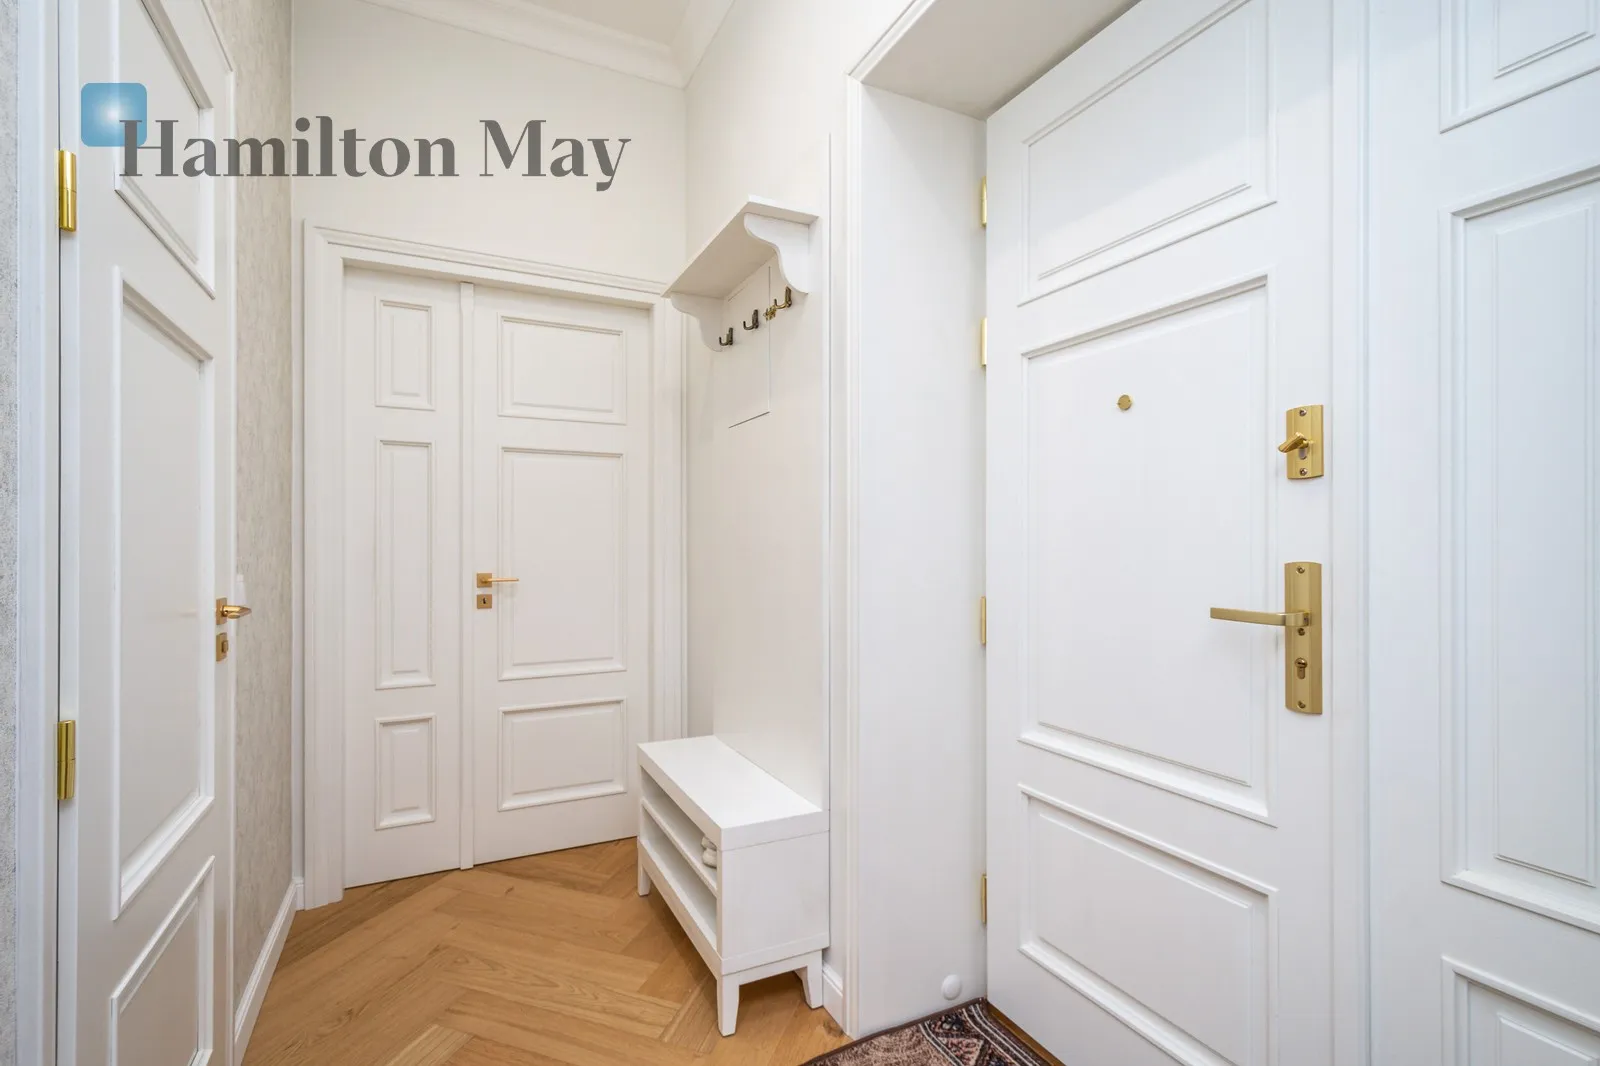 Price: 5800 PLN Bedrooms: 2 Bathrooms: 1